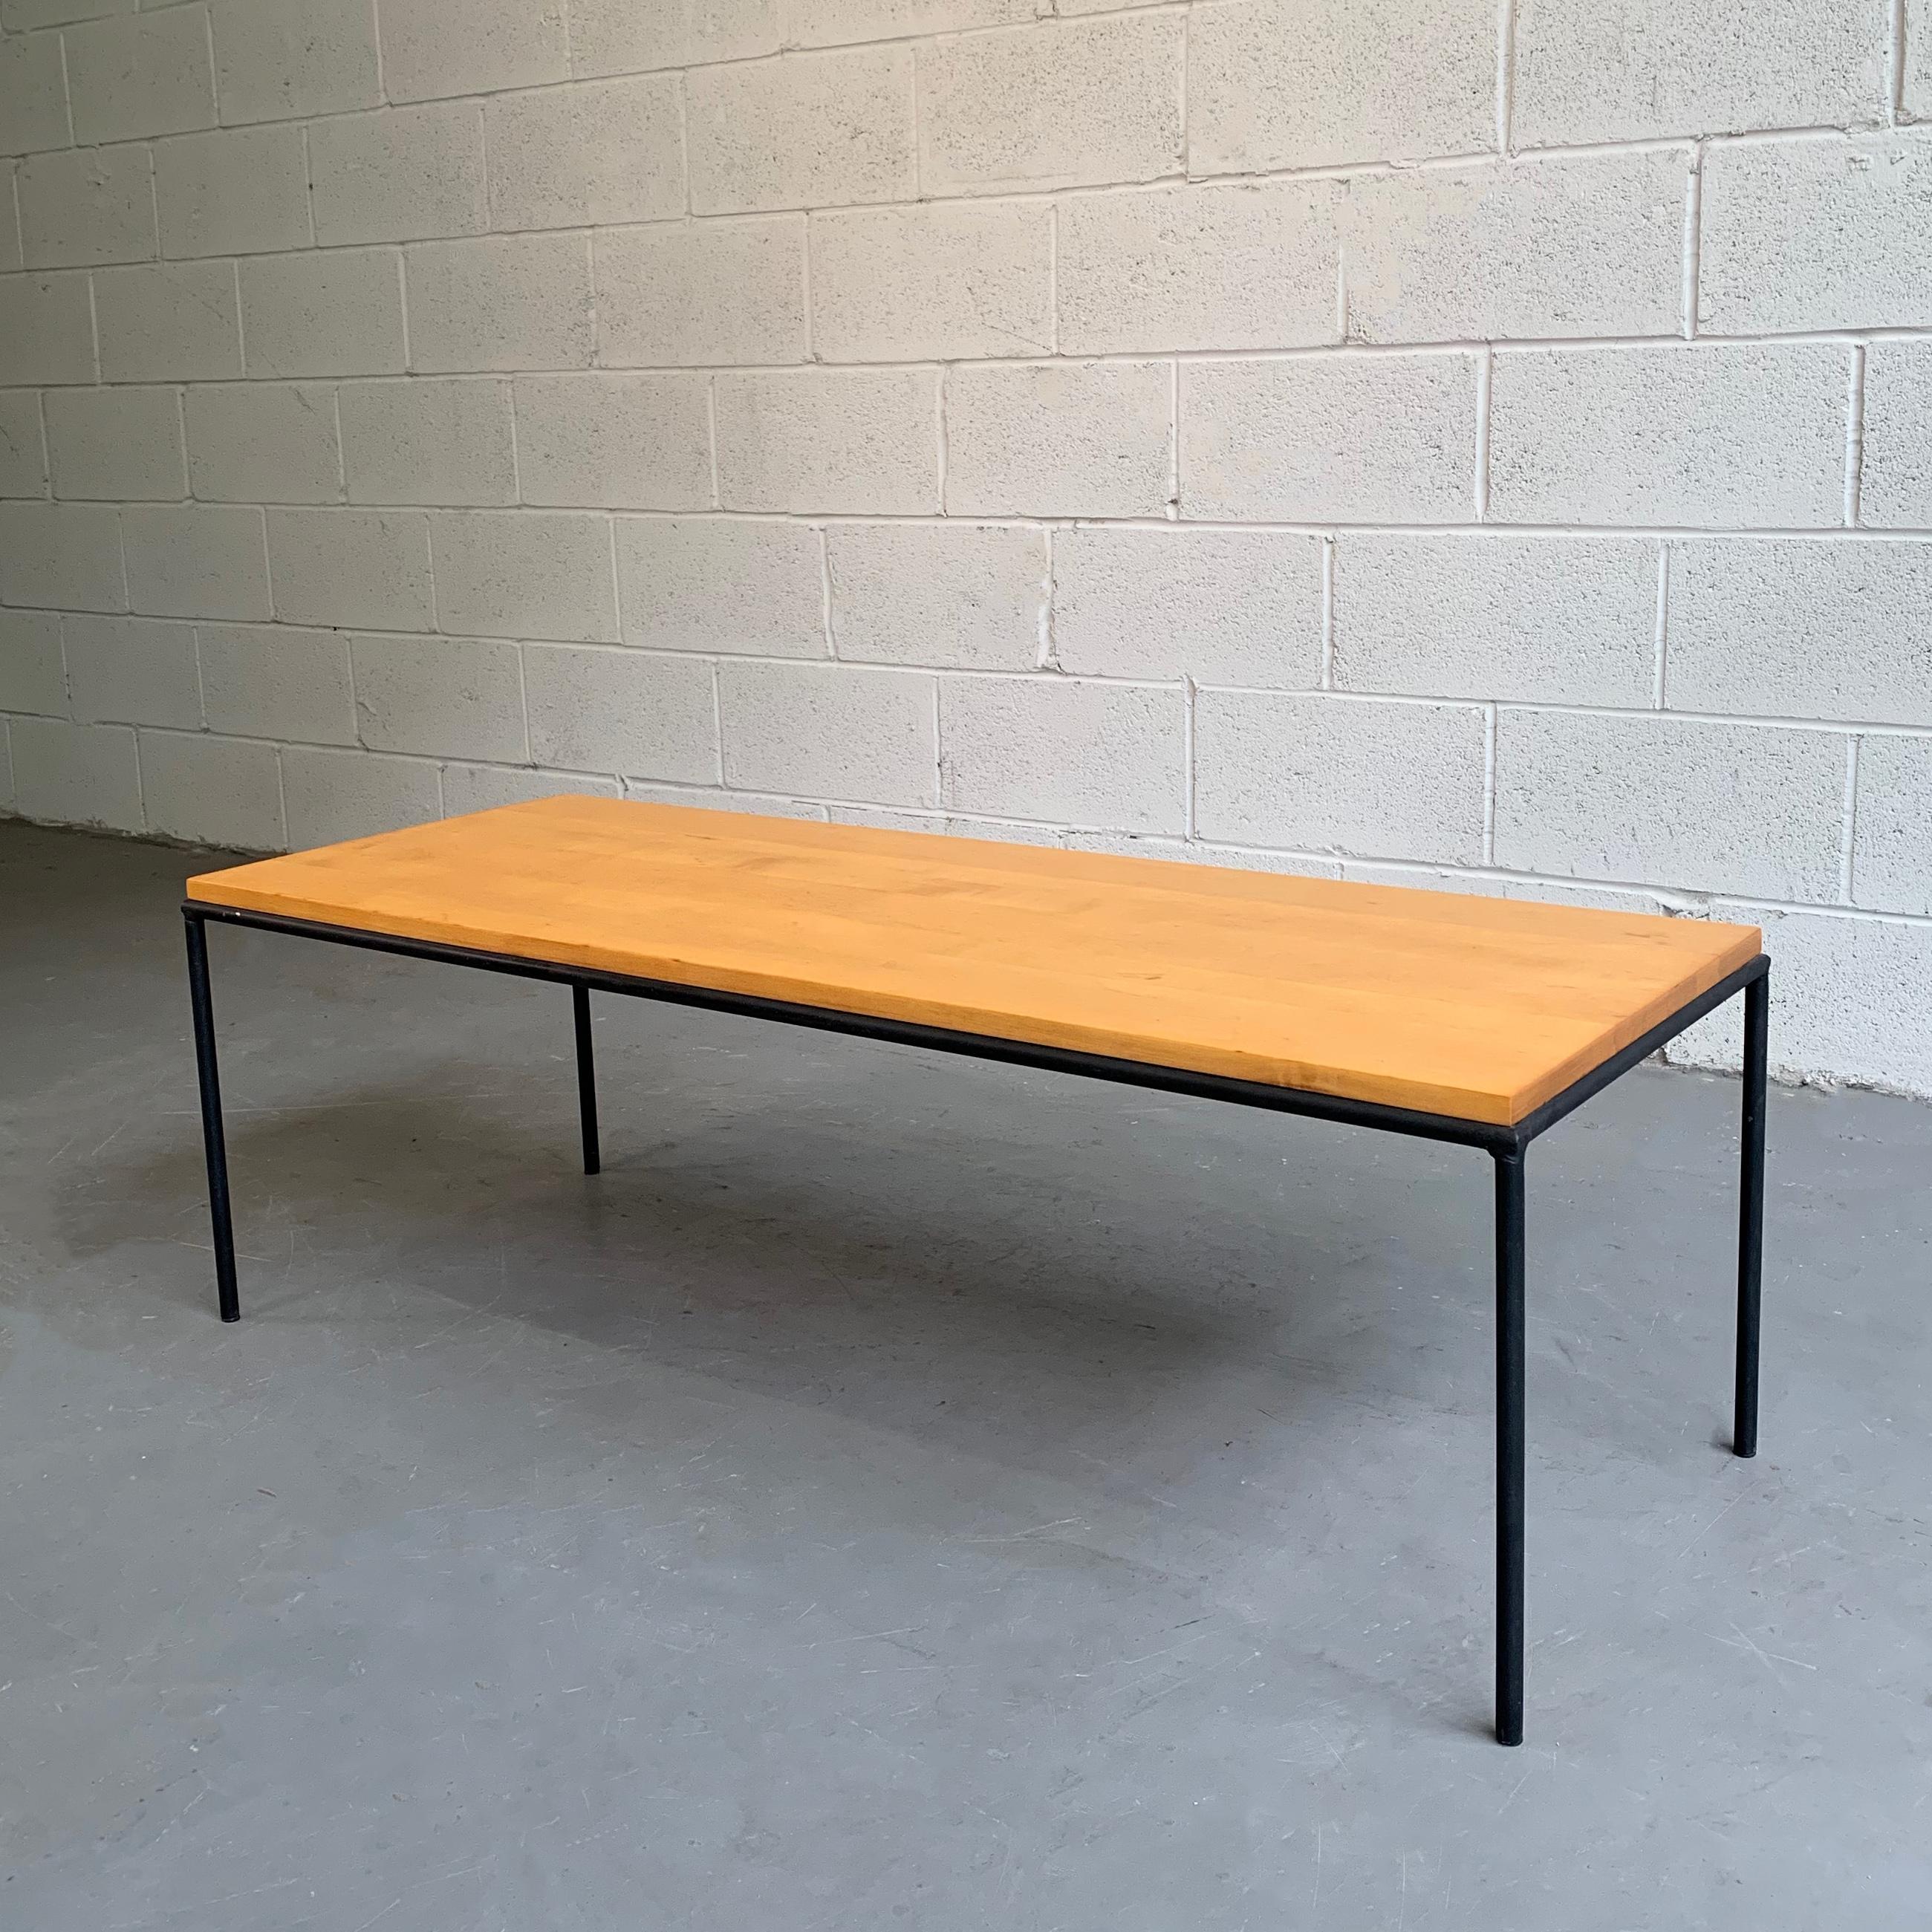 Table basse de Paul McCobb pour Winchendon, de style moderne du milieu du siècle, dotée d'une structure minimale en fer forgé et d'un plateau en érable.